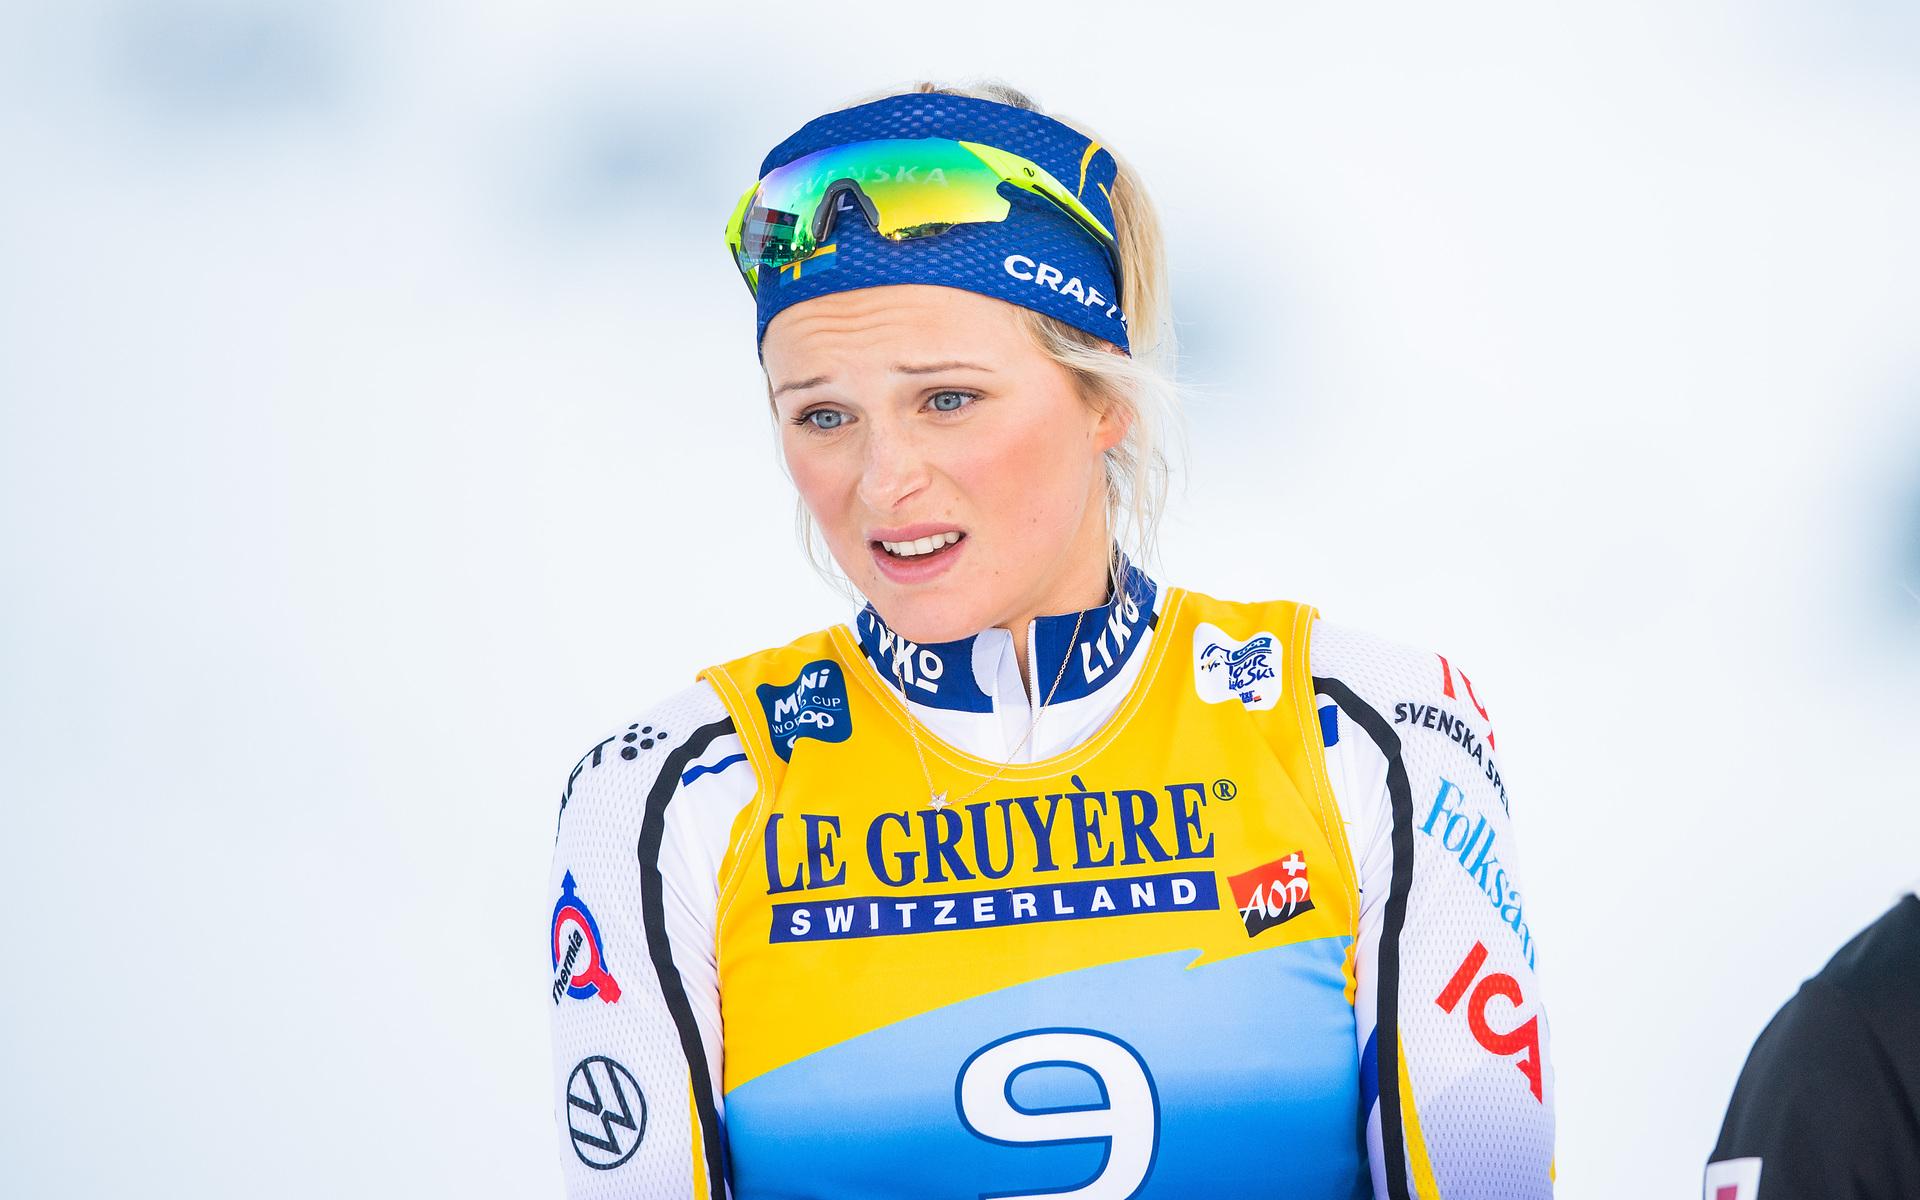 Nu åker Frida Karlsson hem och laddar inför OS, istället för at fullfölja Tour de ski. 